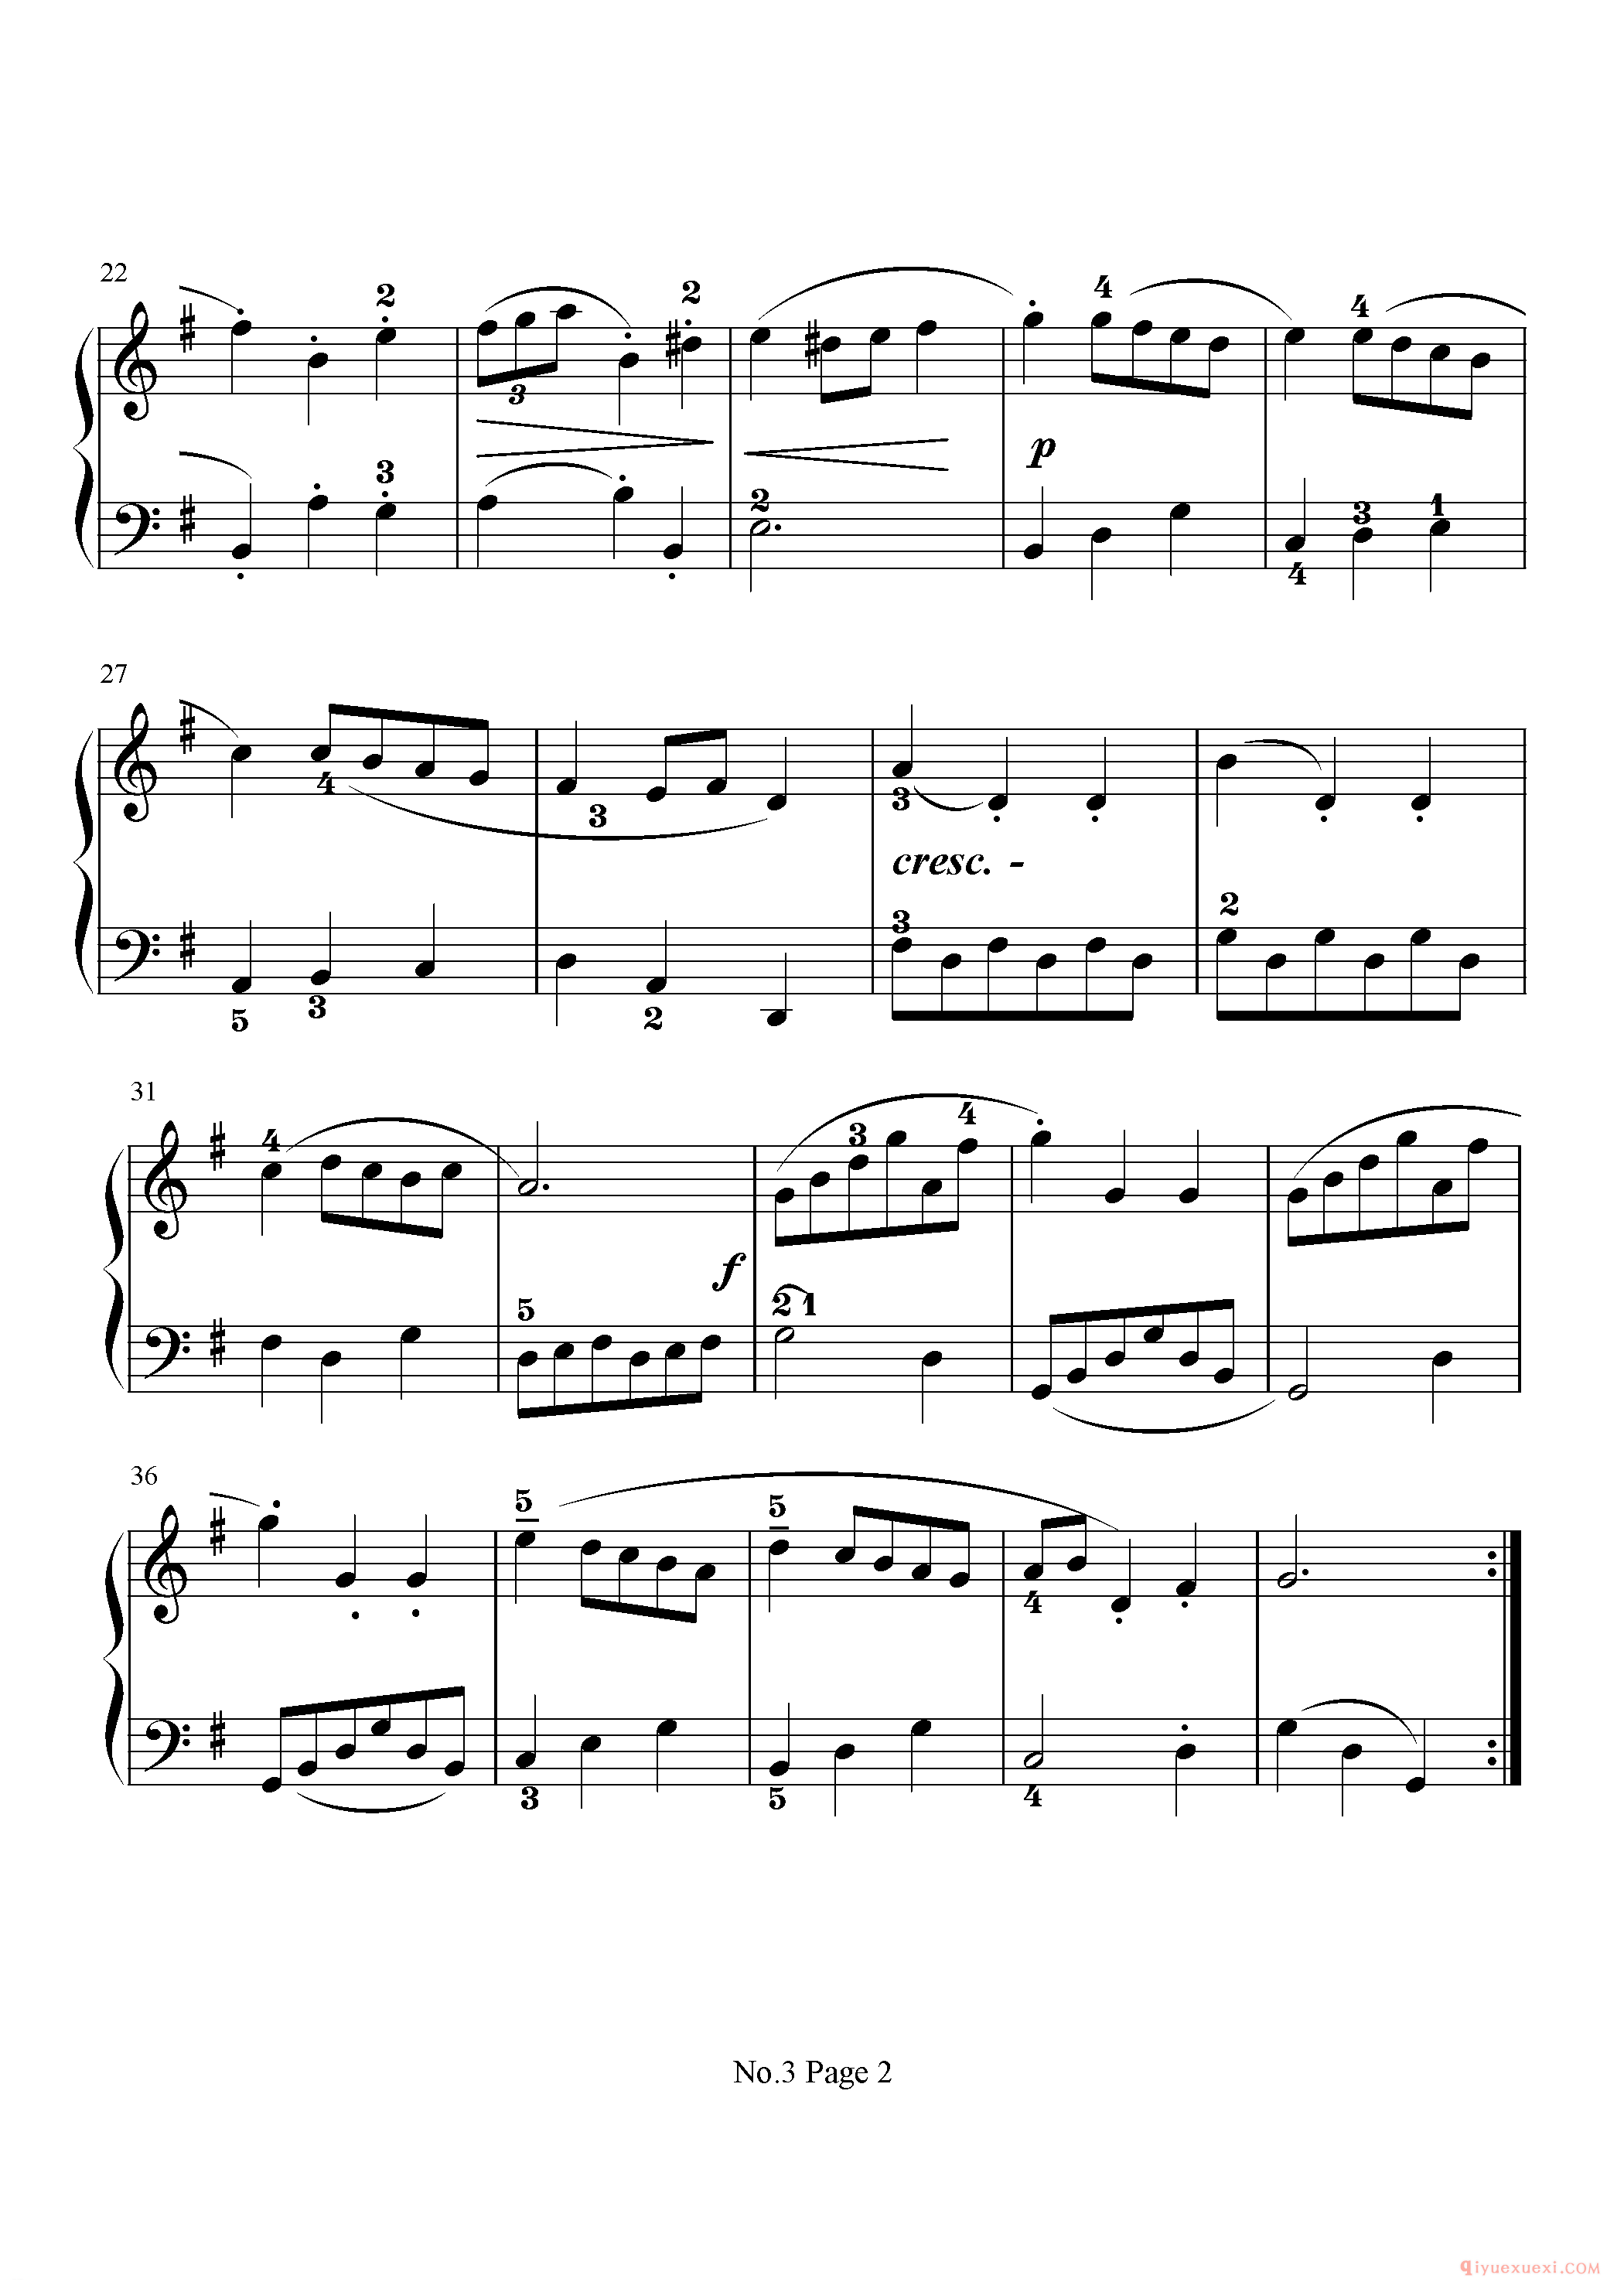 初级钢琴乐曲谱《小步舞曲 Minuet》巴赫,A study in the arpeggio of the Common Chord(close position).